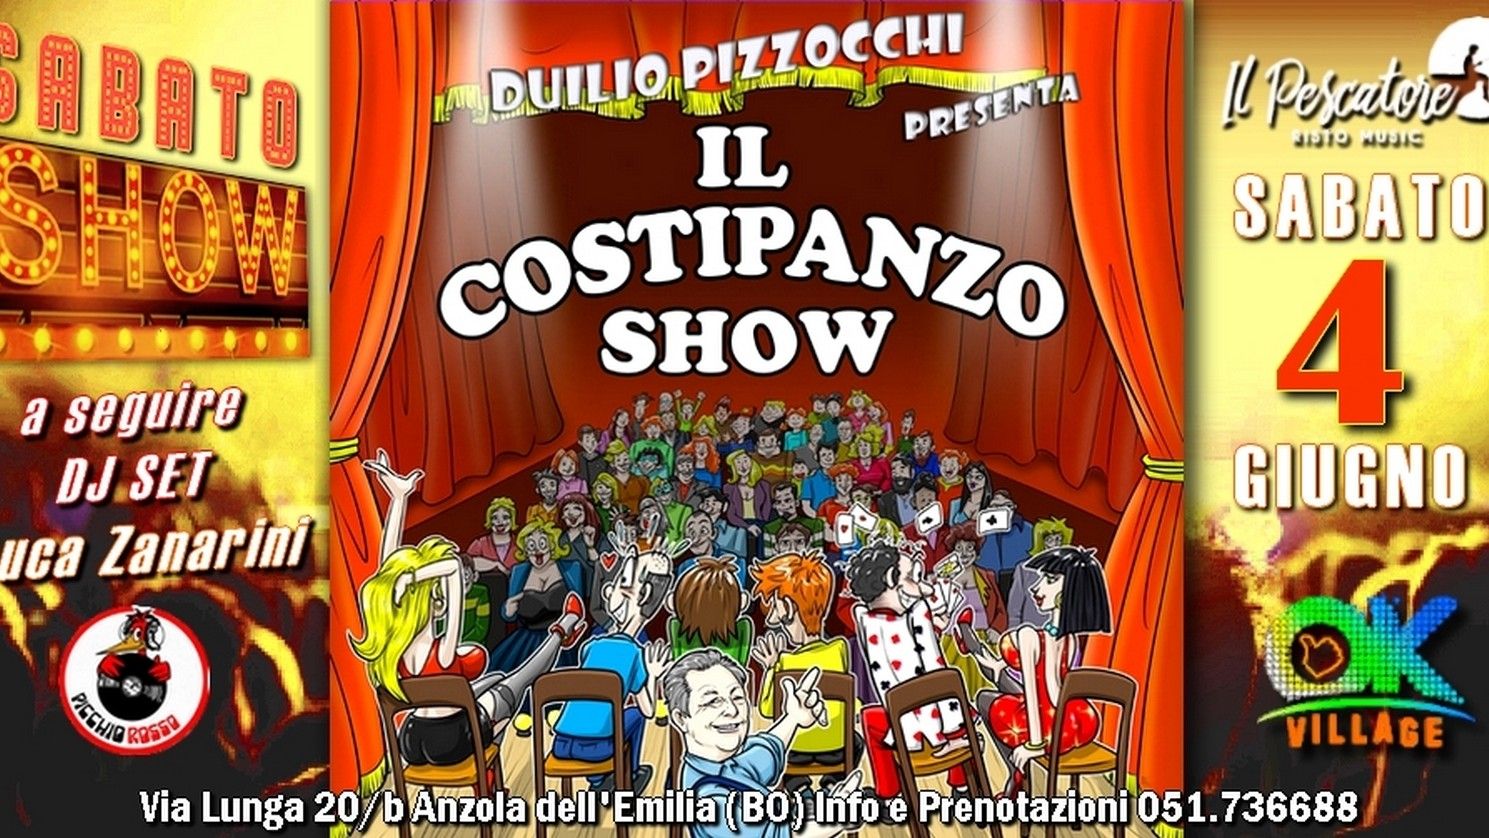 Il Costipanzo Show con Duilio Pizzocchi & Friends